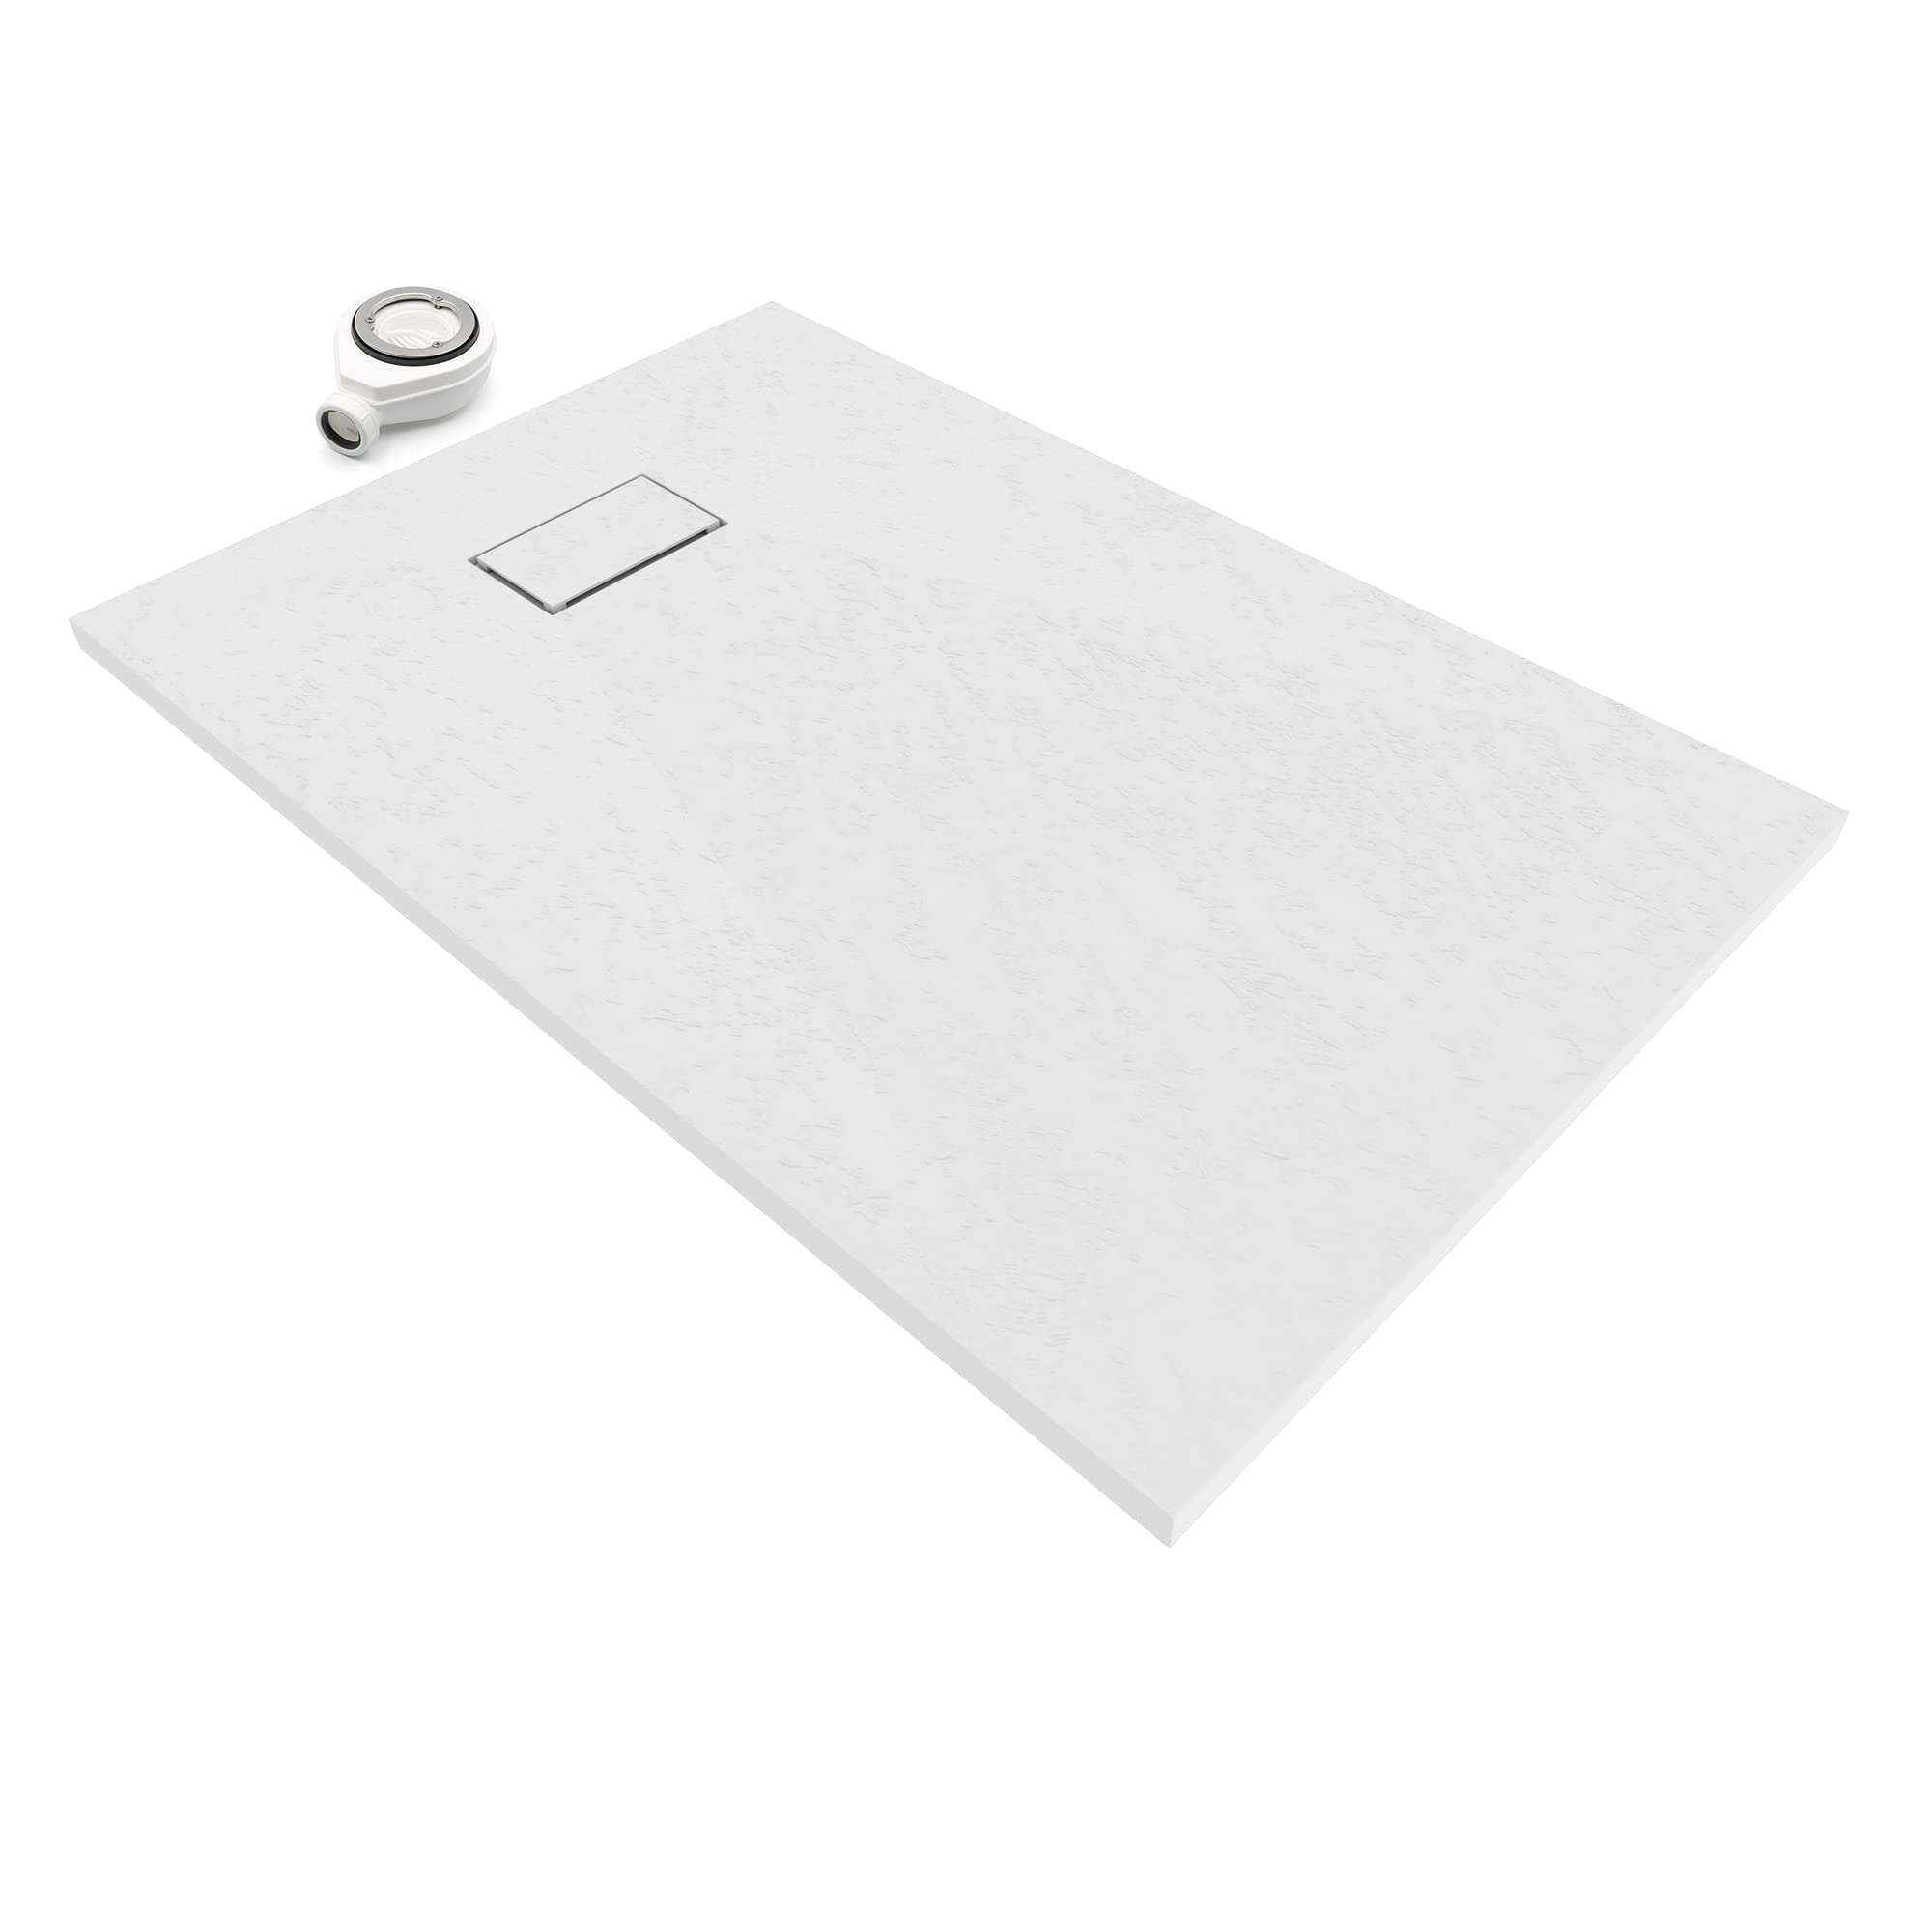 Plato de ducha de pizarra blanco 120x90cm con referencia 53009127 de la marca ACQUABELLA